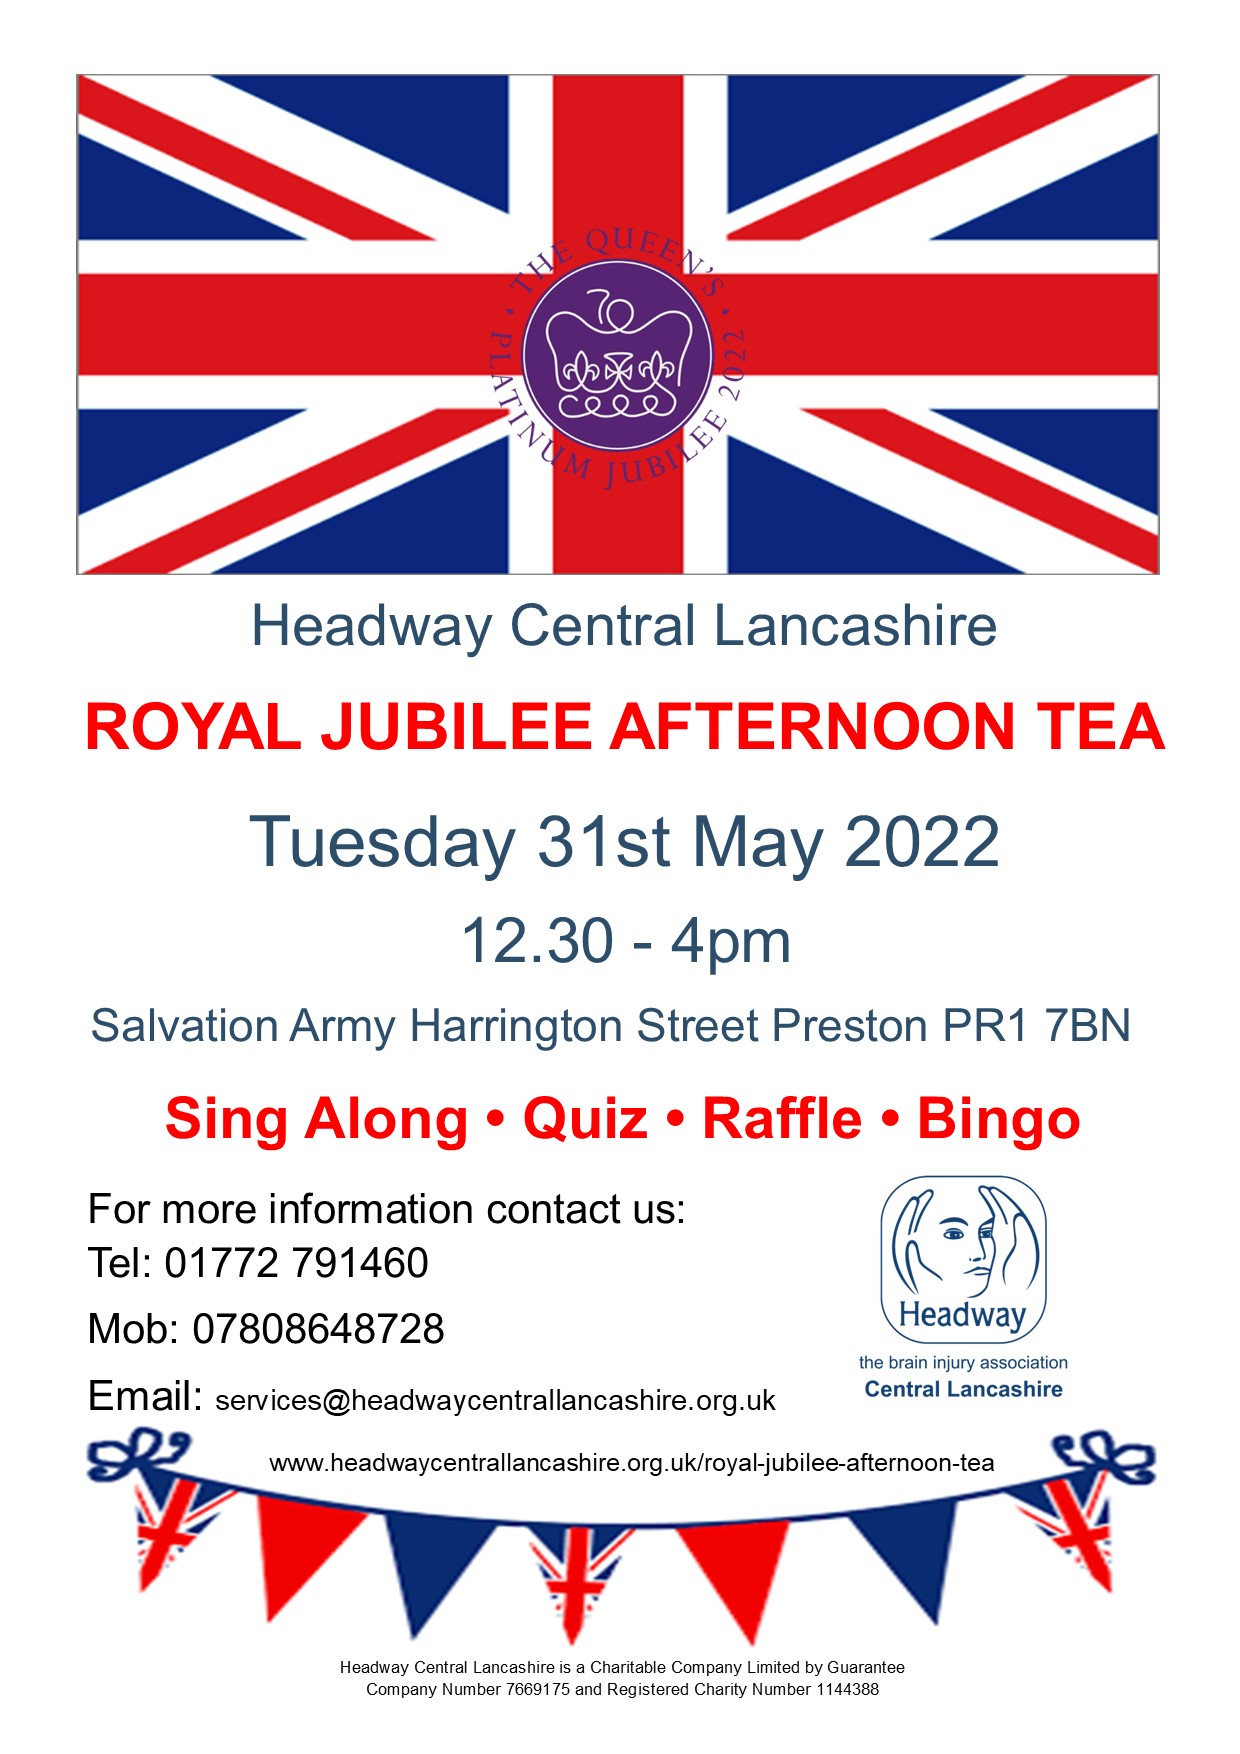 Royal Jubilee Afternoon Tea